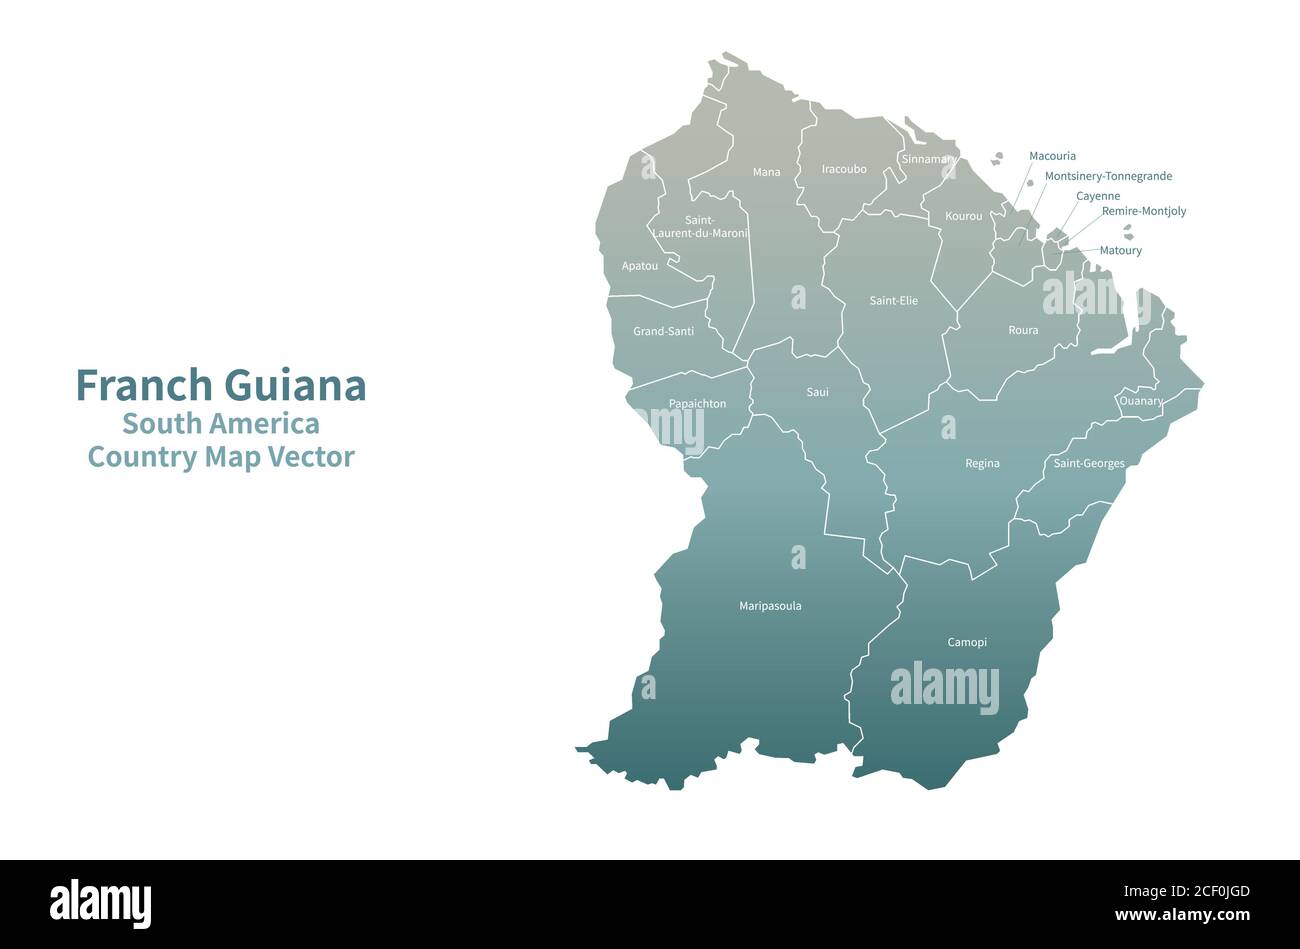 Carte vectorielle de la Guyane française. Carte de pays série verte. Illustration de Vecteur